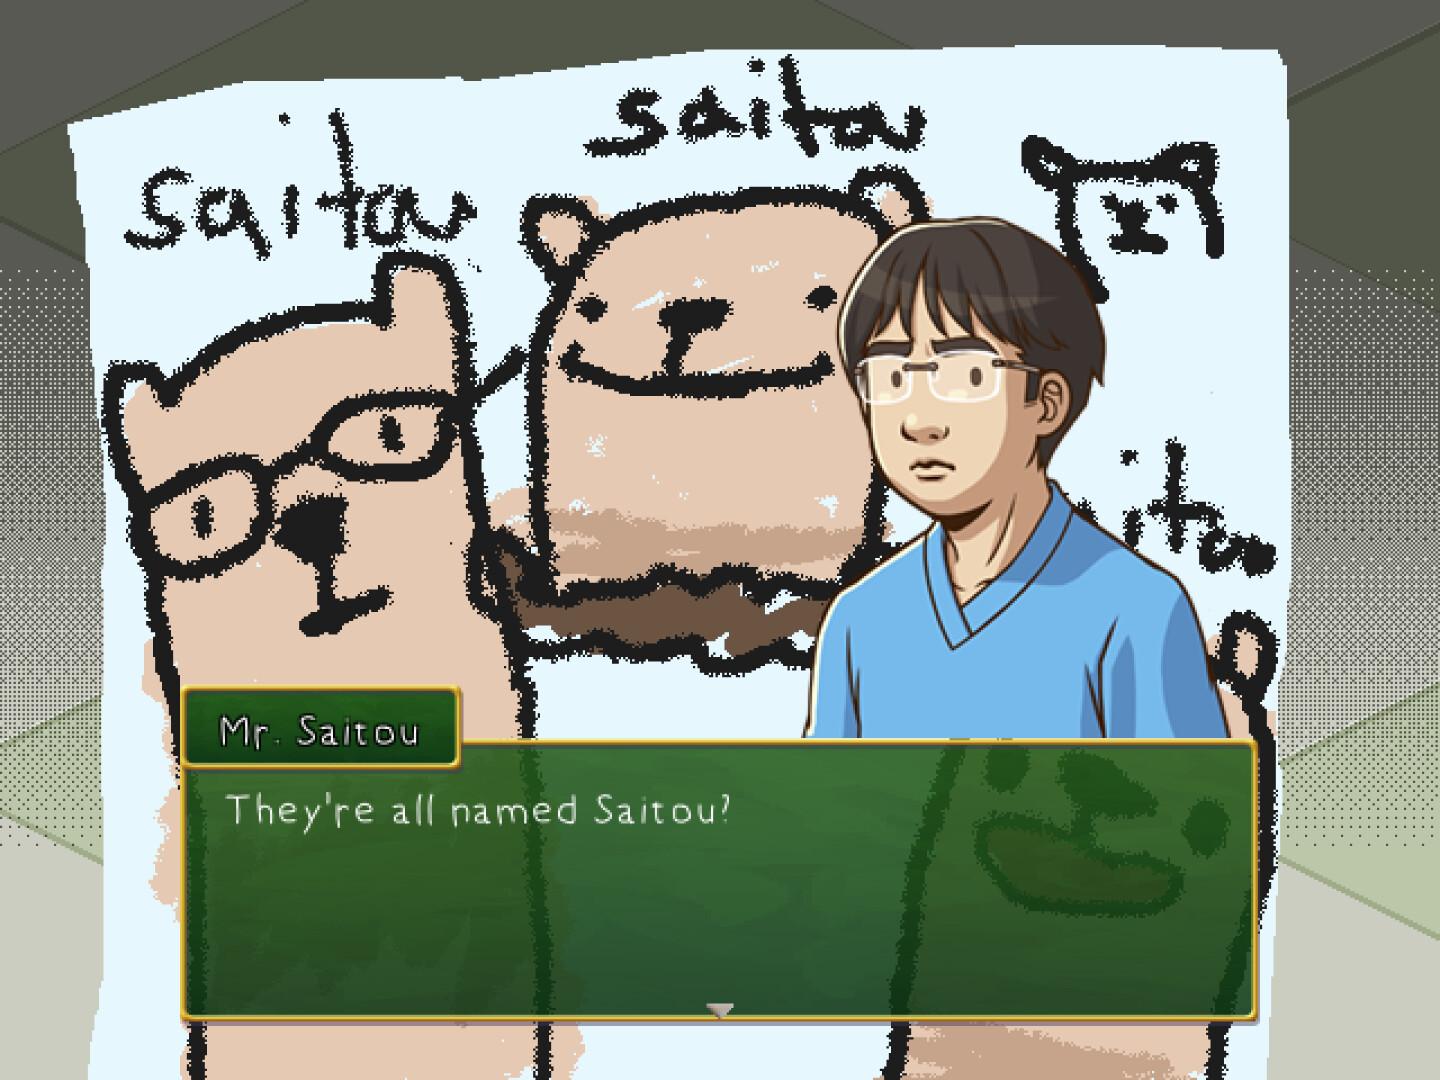 Mr. Saitou